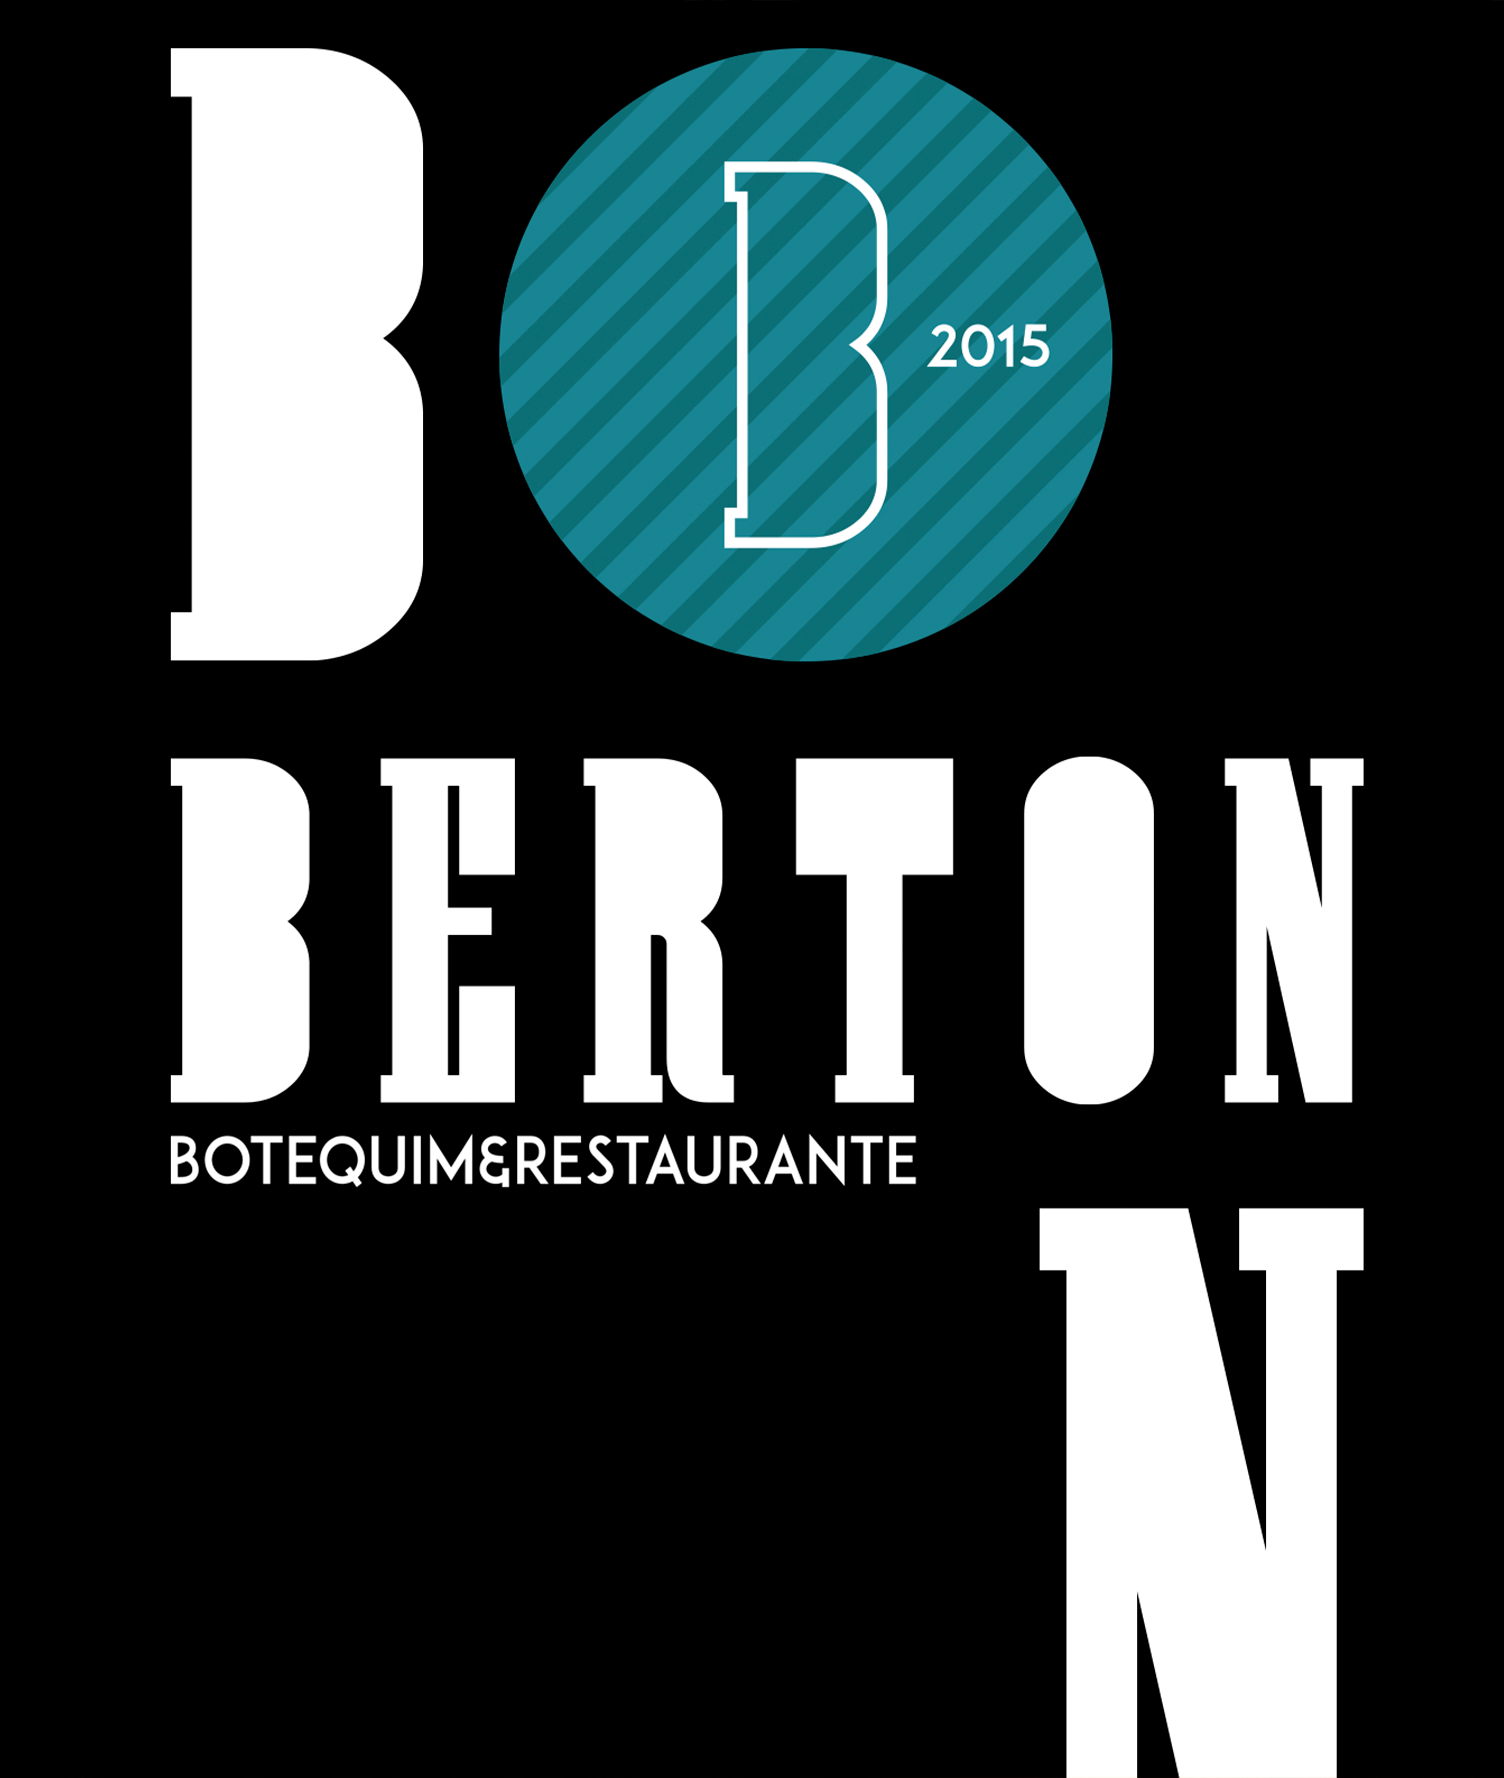 Berton Botequim e Restaurante Design